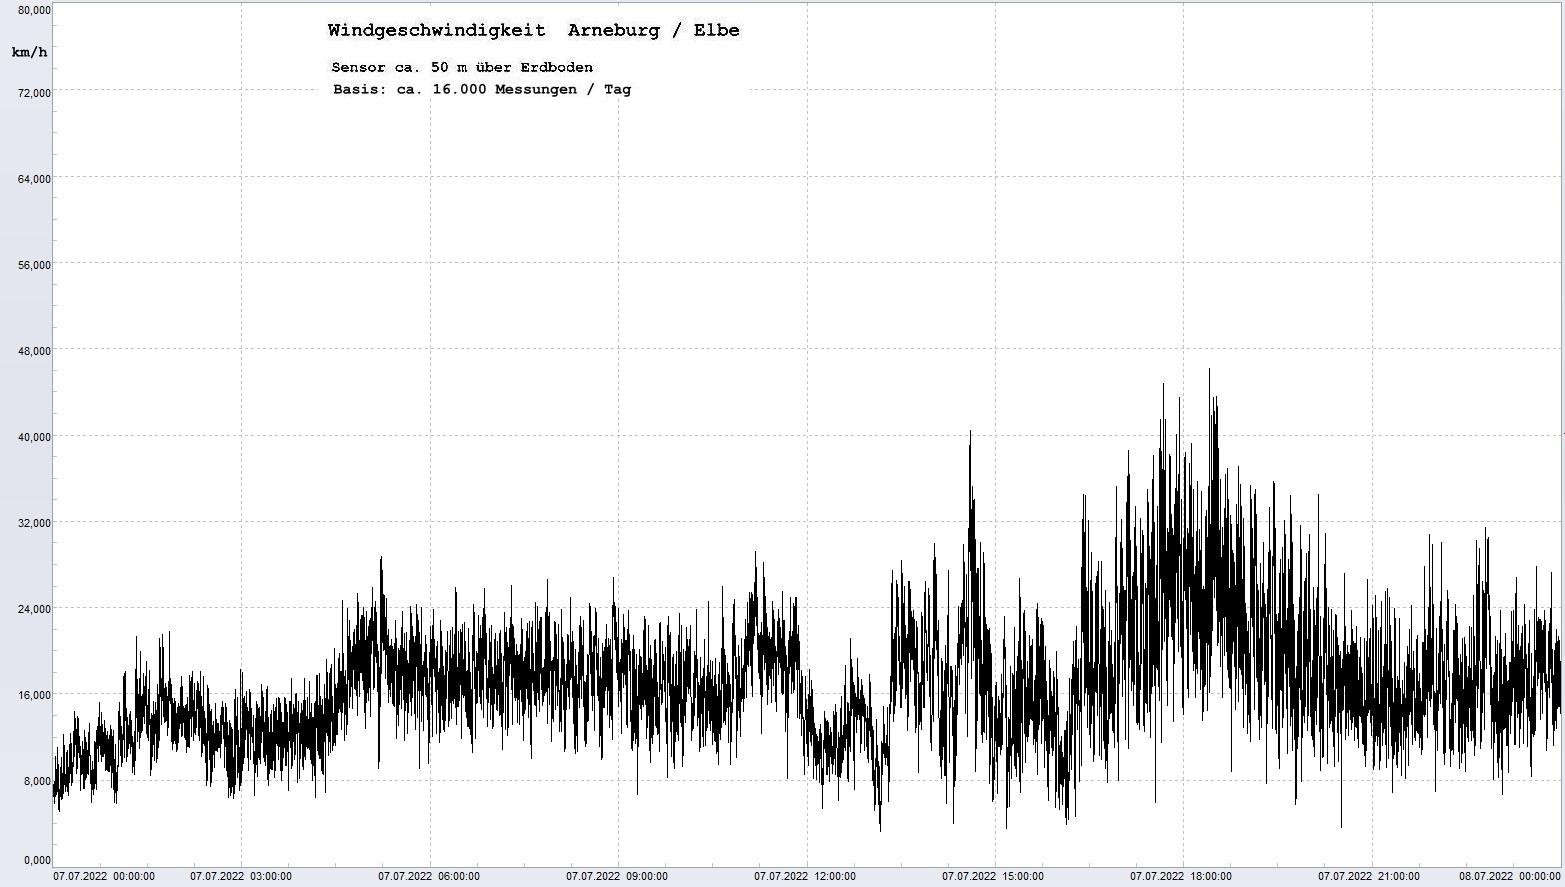 Arneburg Tages-Diagramm Winddaten, 07.07.2022
  Diagramm, Sensor auf Gebude, ca. 50 m ber Erdboden, Basis: 5s-Aufzeichnung